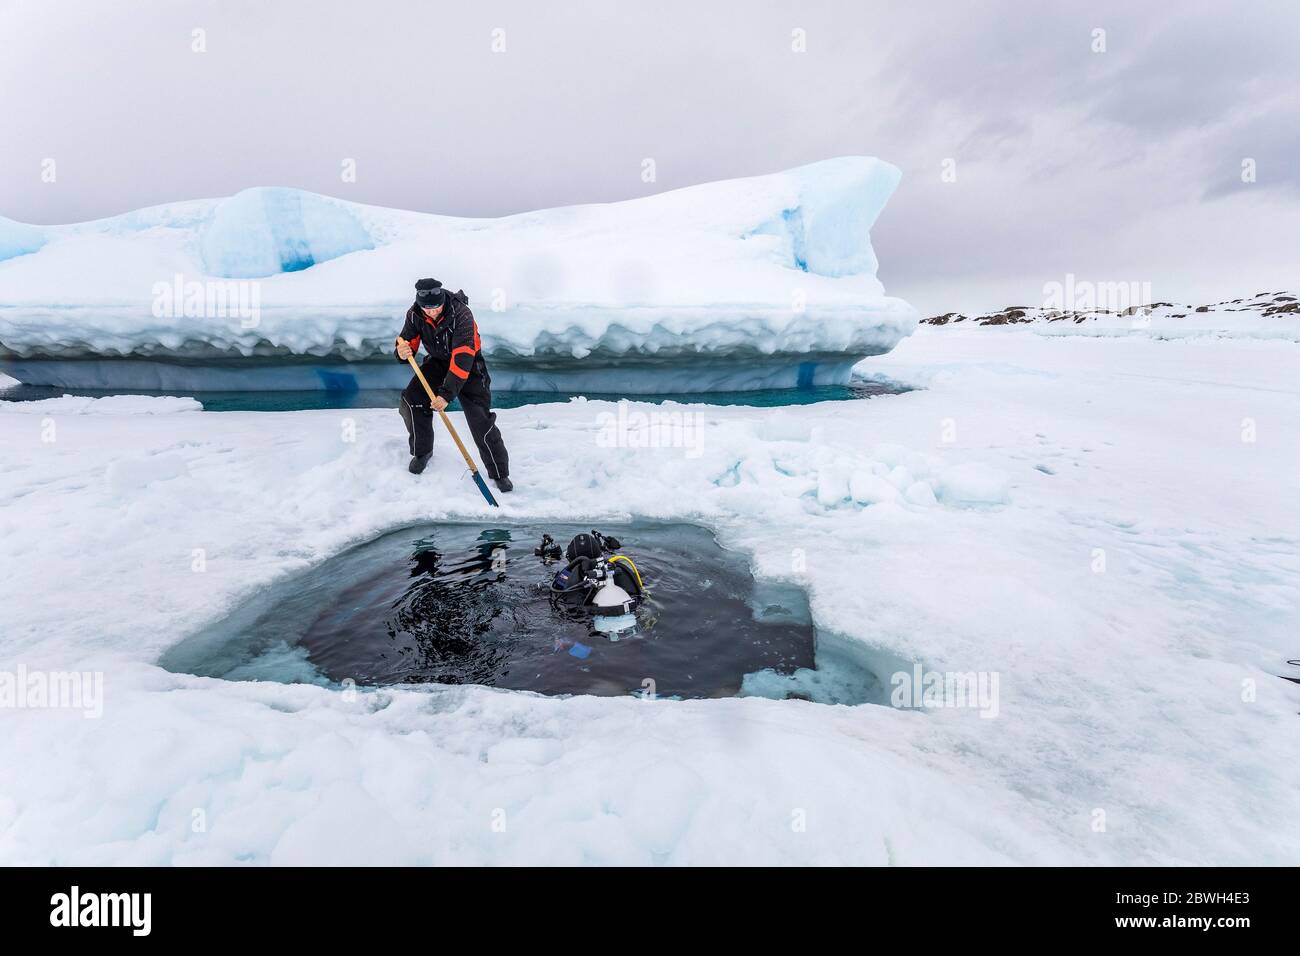 La scie utilise pour couper la glace et faire l'entrée pour plonger sous la glace. À l'arrière, le sommet de l'iceberg émerge de la surface de la mer gelée, il se déplace Banque D'Images